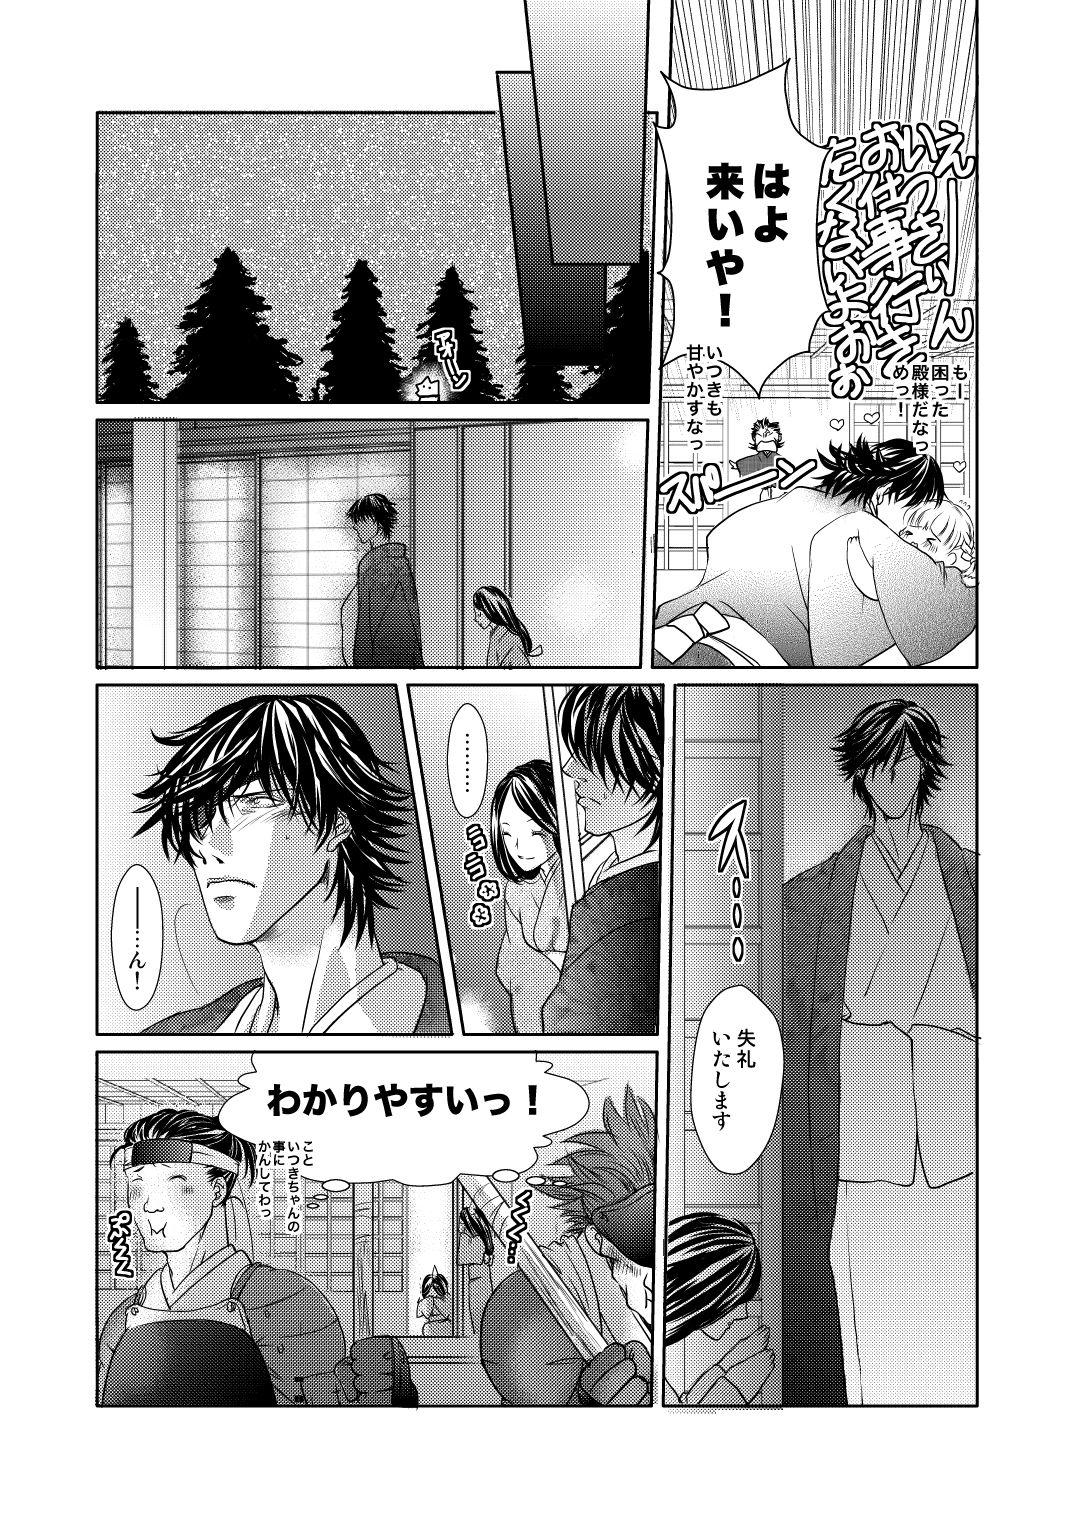 Fuyu no Okomori DateItsu Manga 19